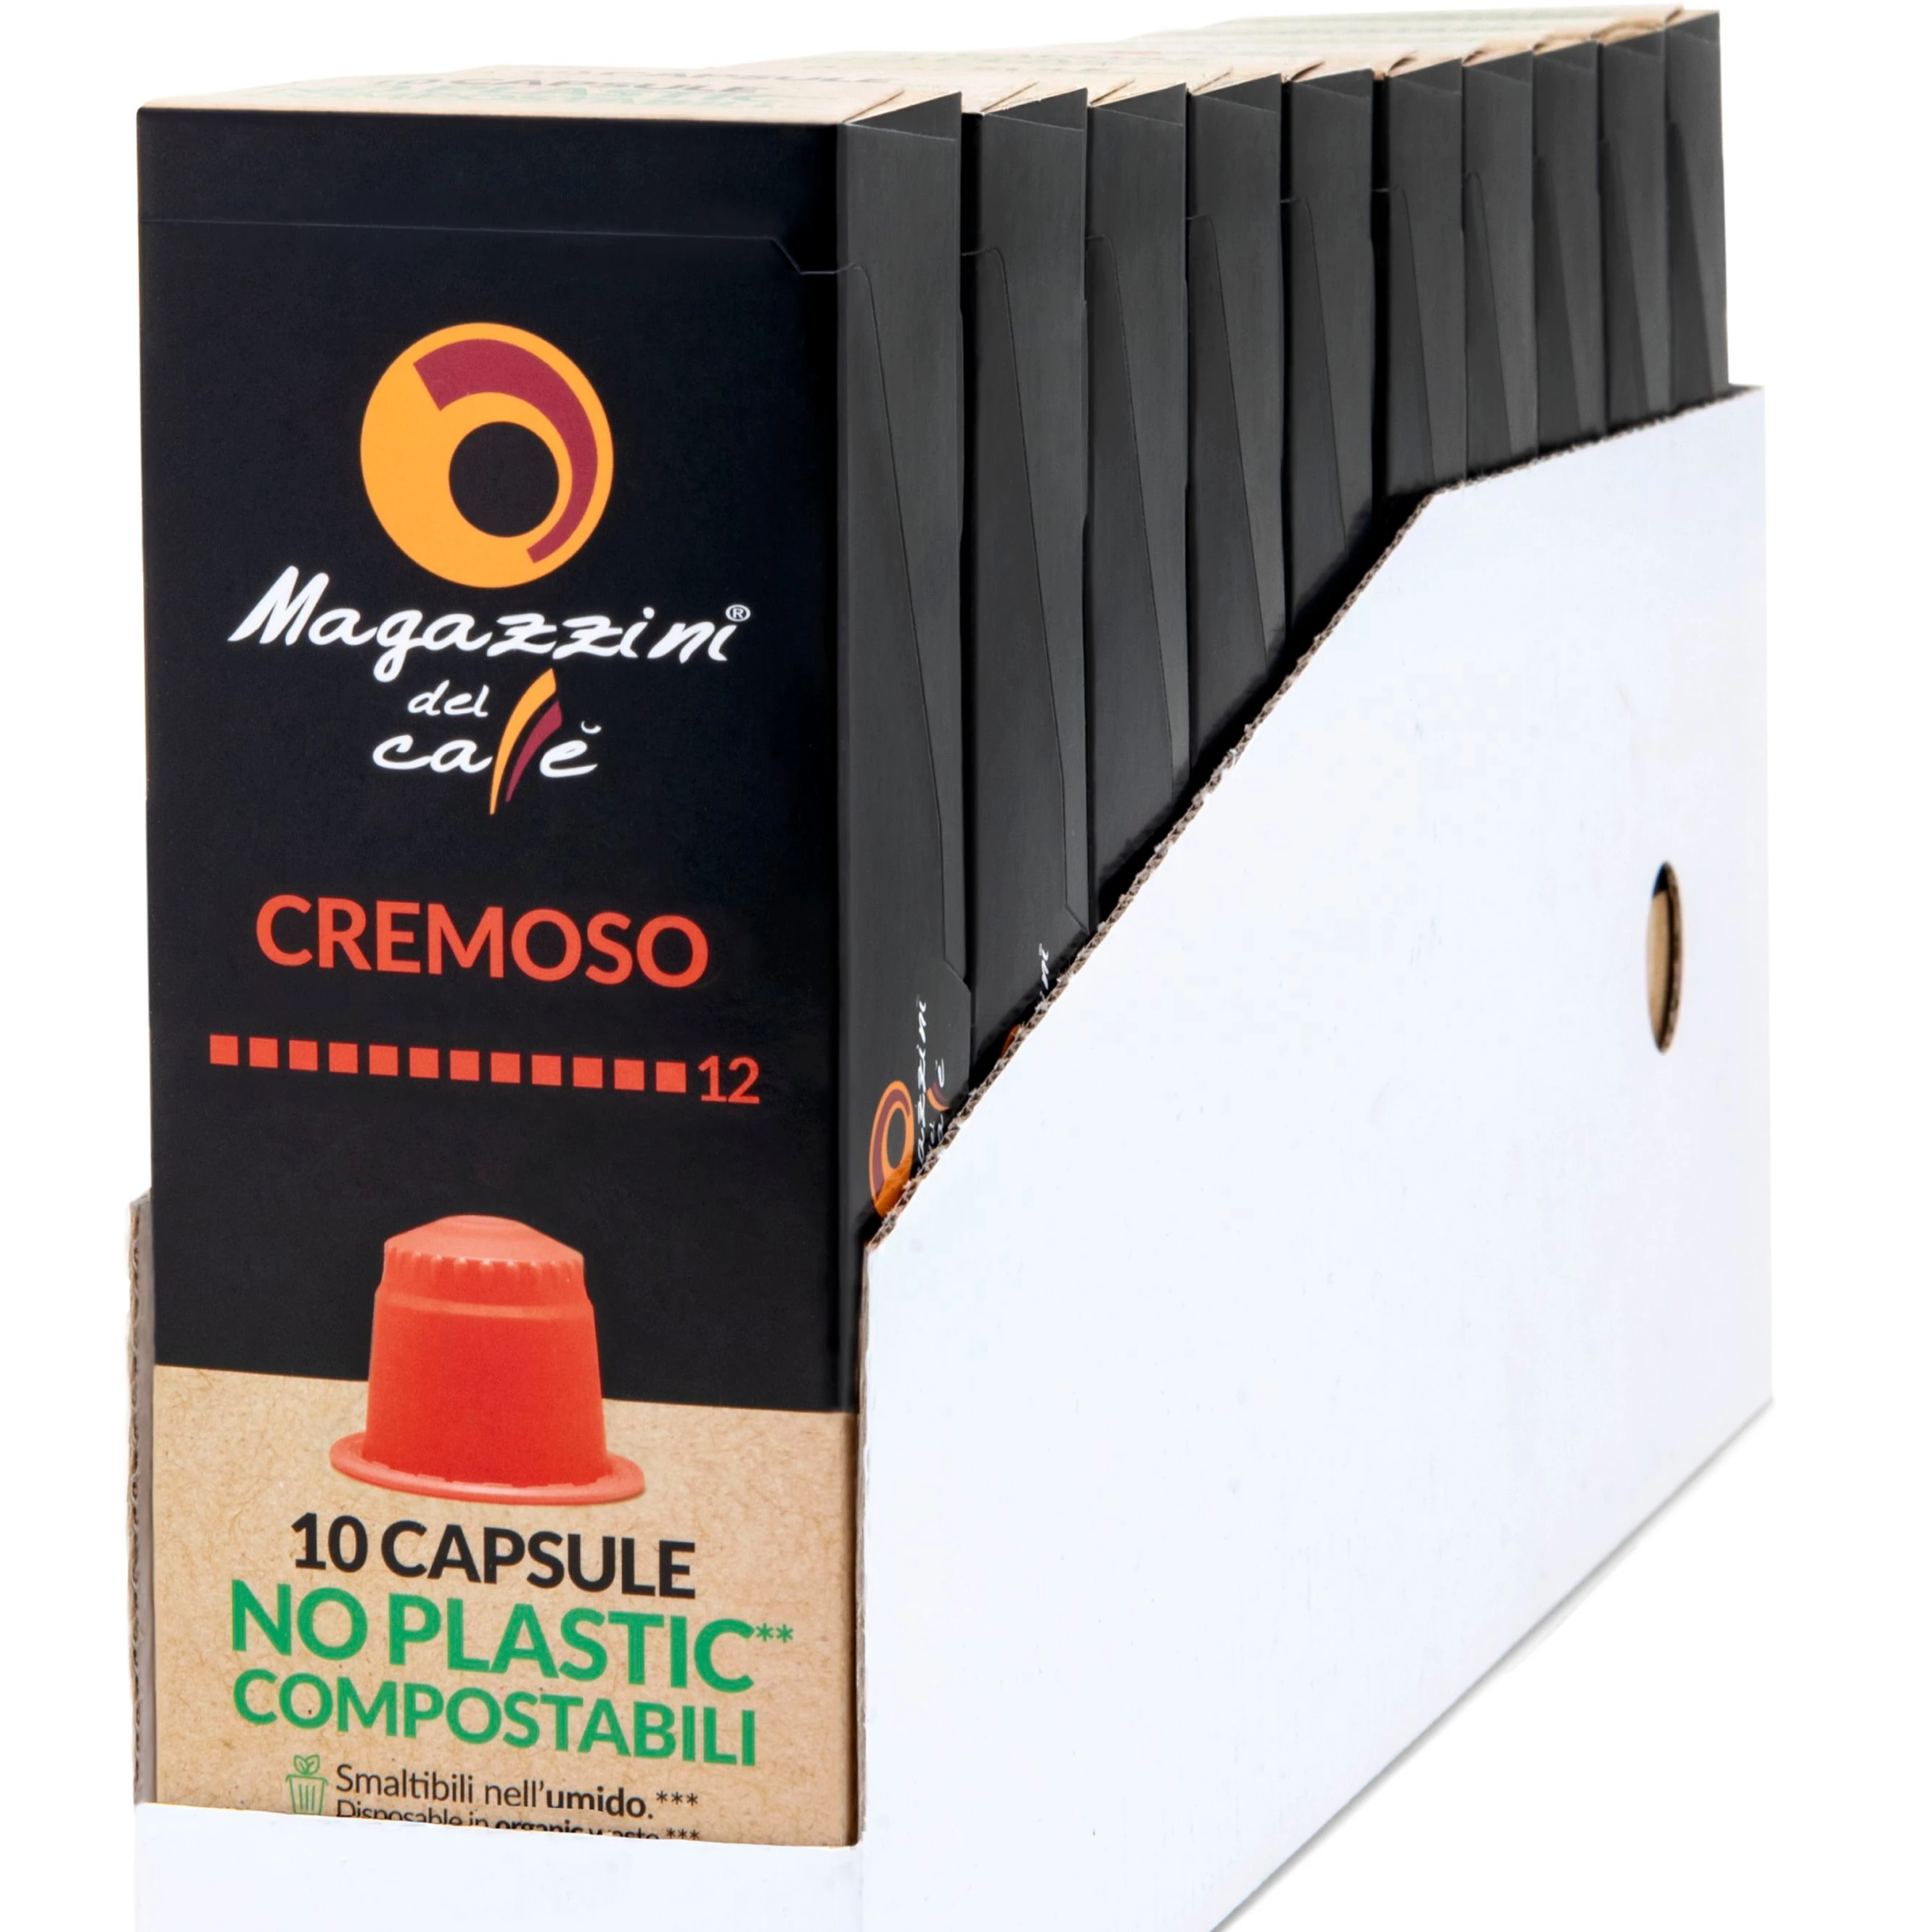 
COMPOSTABLE CREMOSO Italian Espresso Nespresso* compatible coffee capsules  10 cps box  (1700001101829)